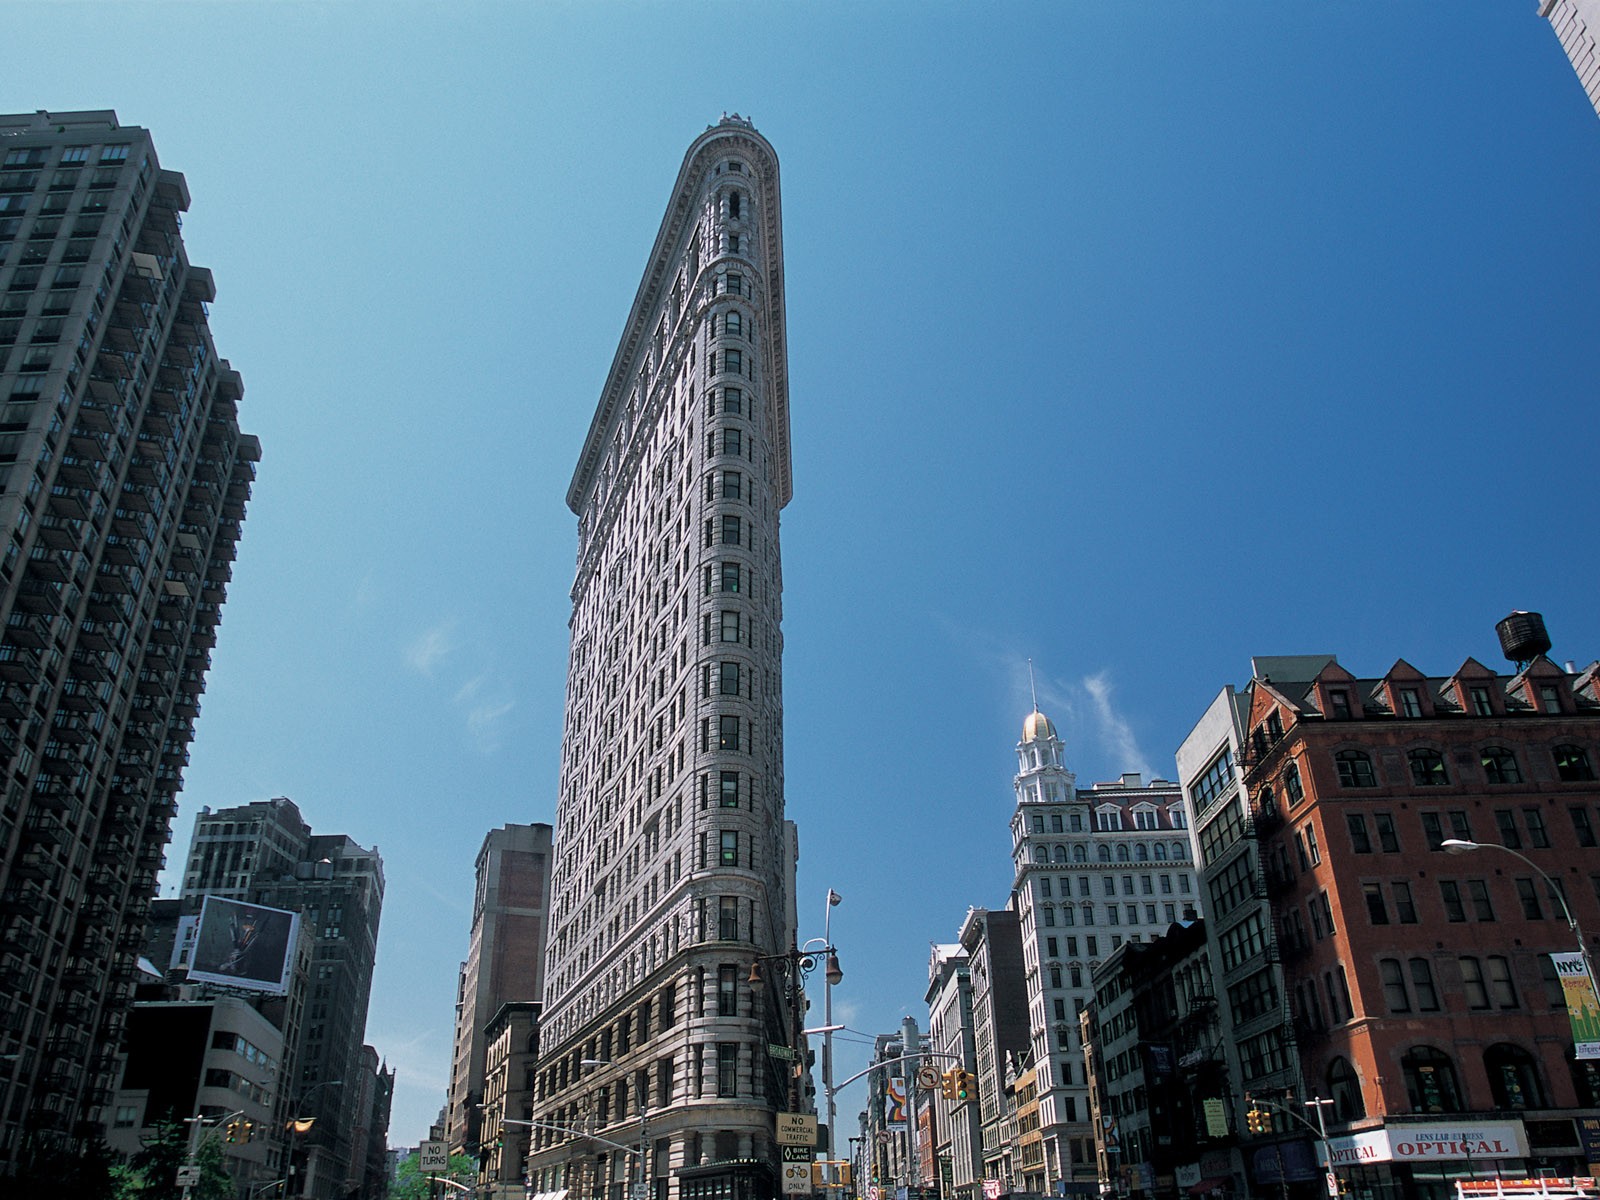 La bulliciosa ciudad de Nueva York Edificio #8 - 1600x1200